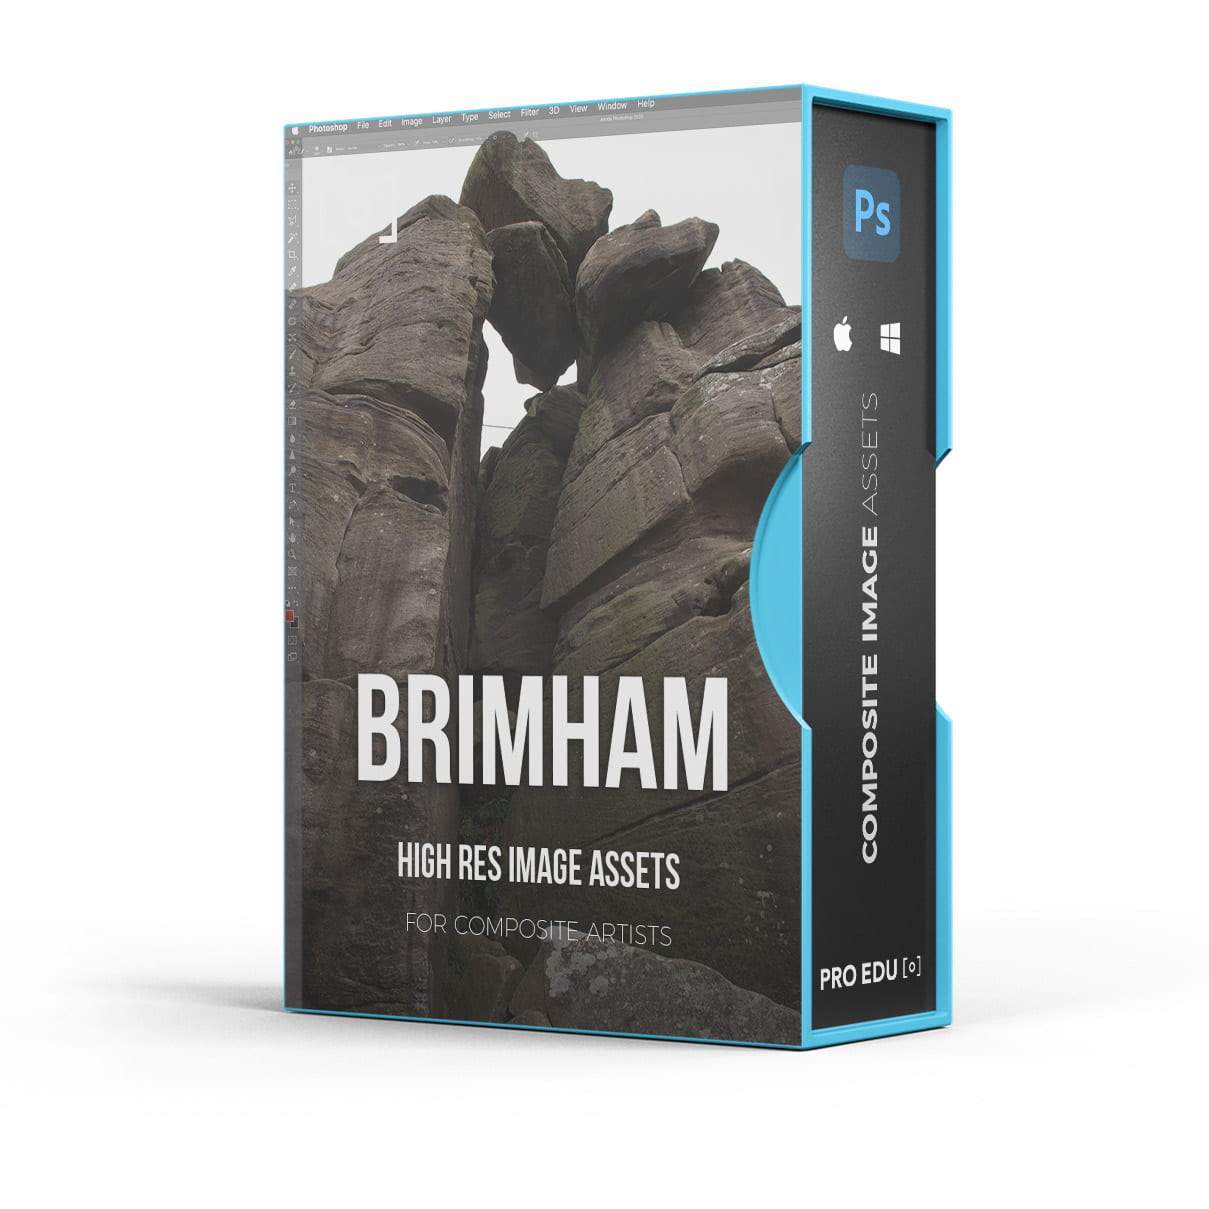 Brimham Rocks Composite Stock Photoshop Asset Pack - PRO EDU PRO EDU PRO EDU